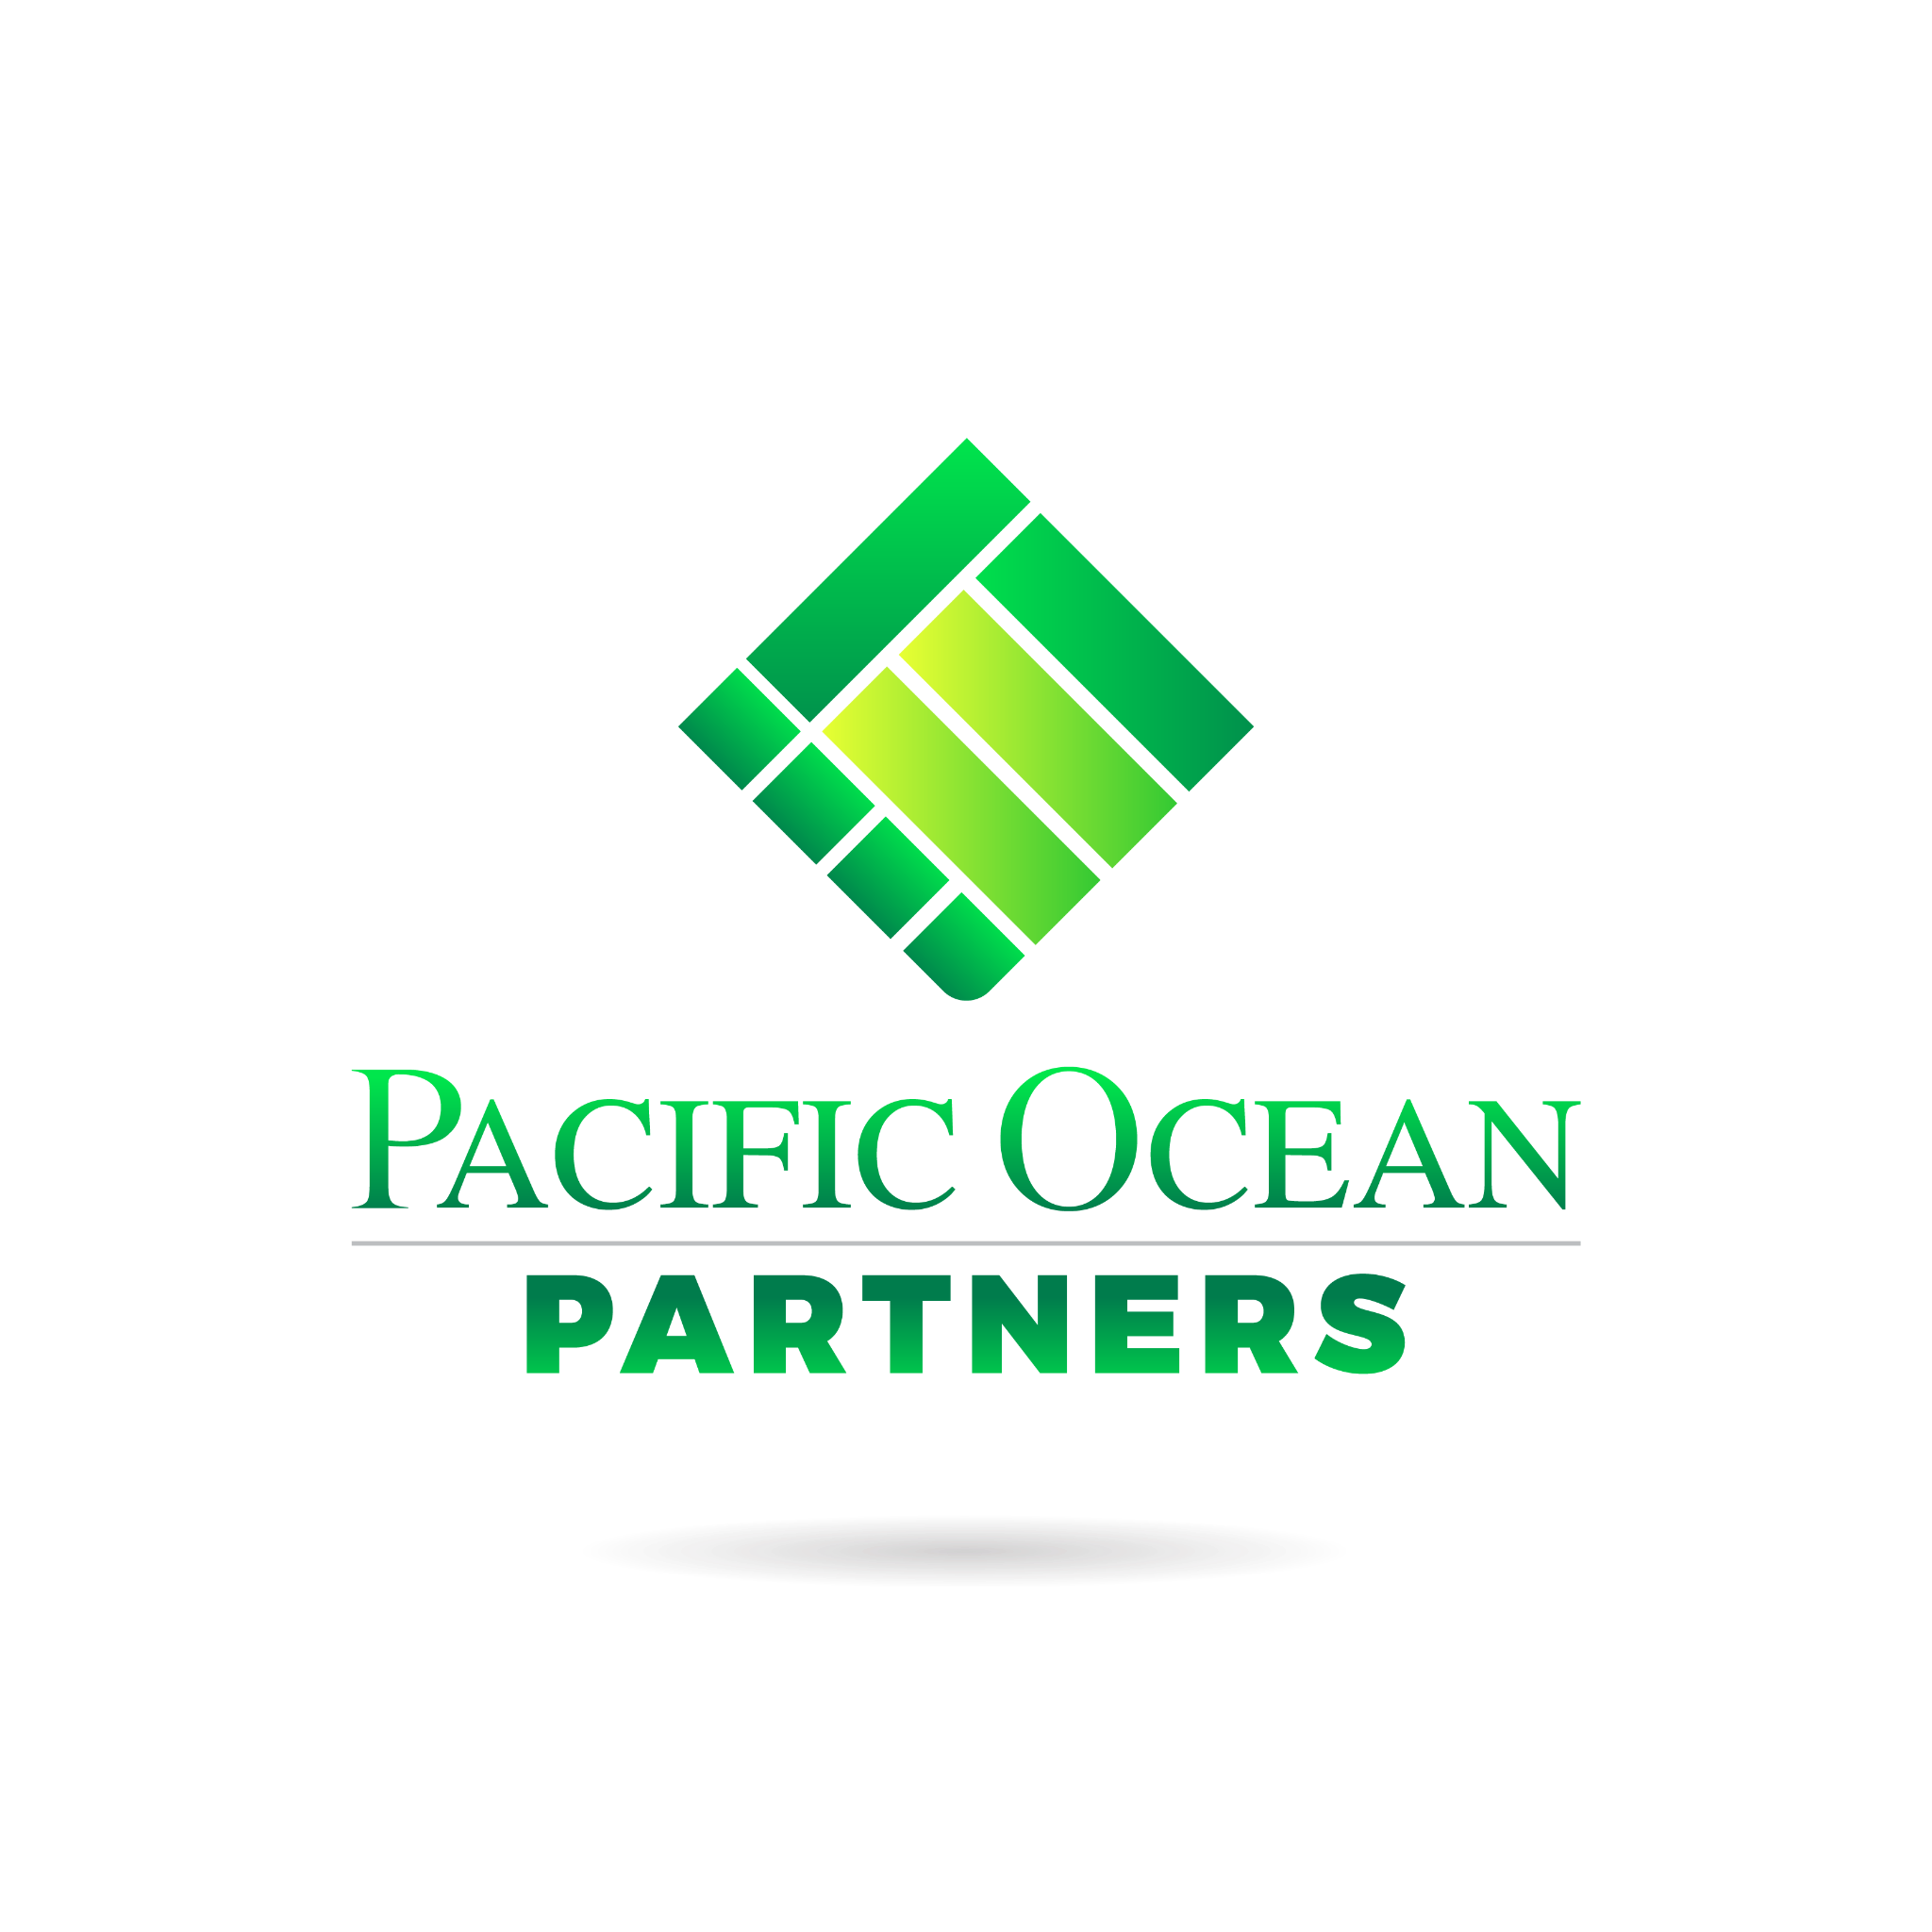 Pacific Ocean Partners